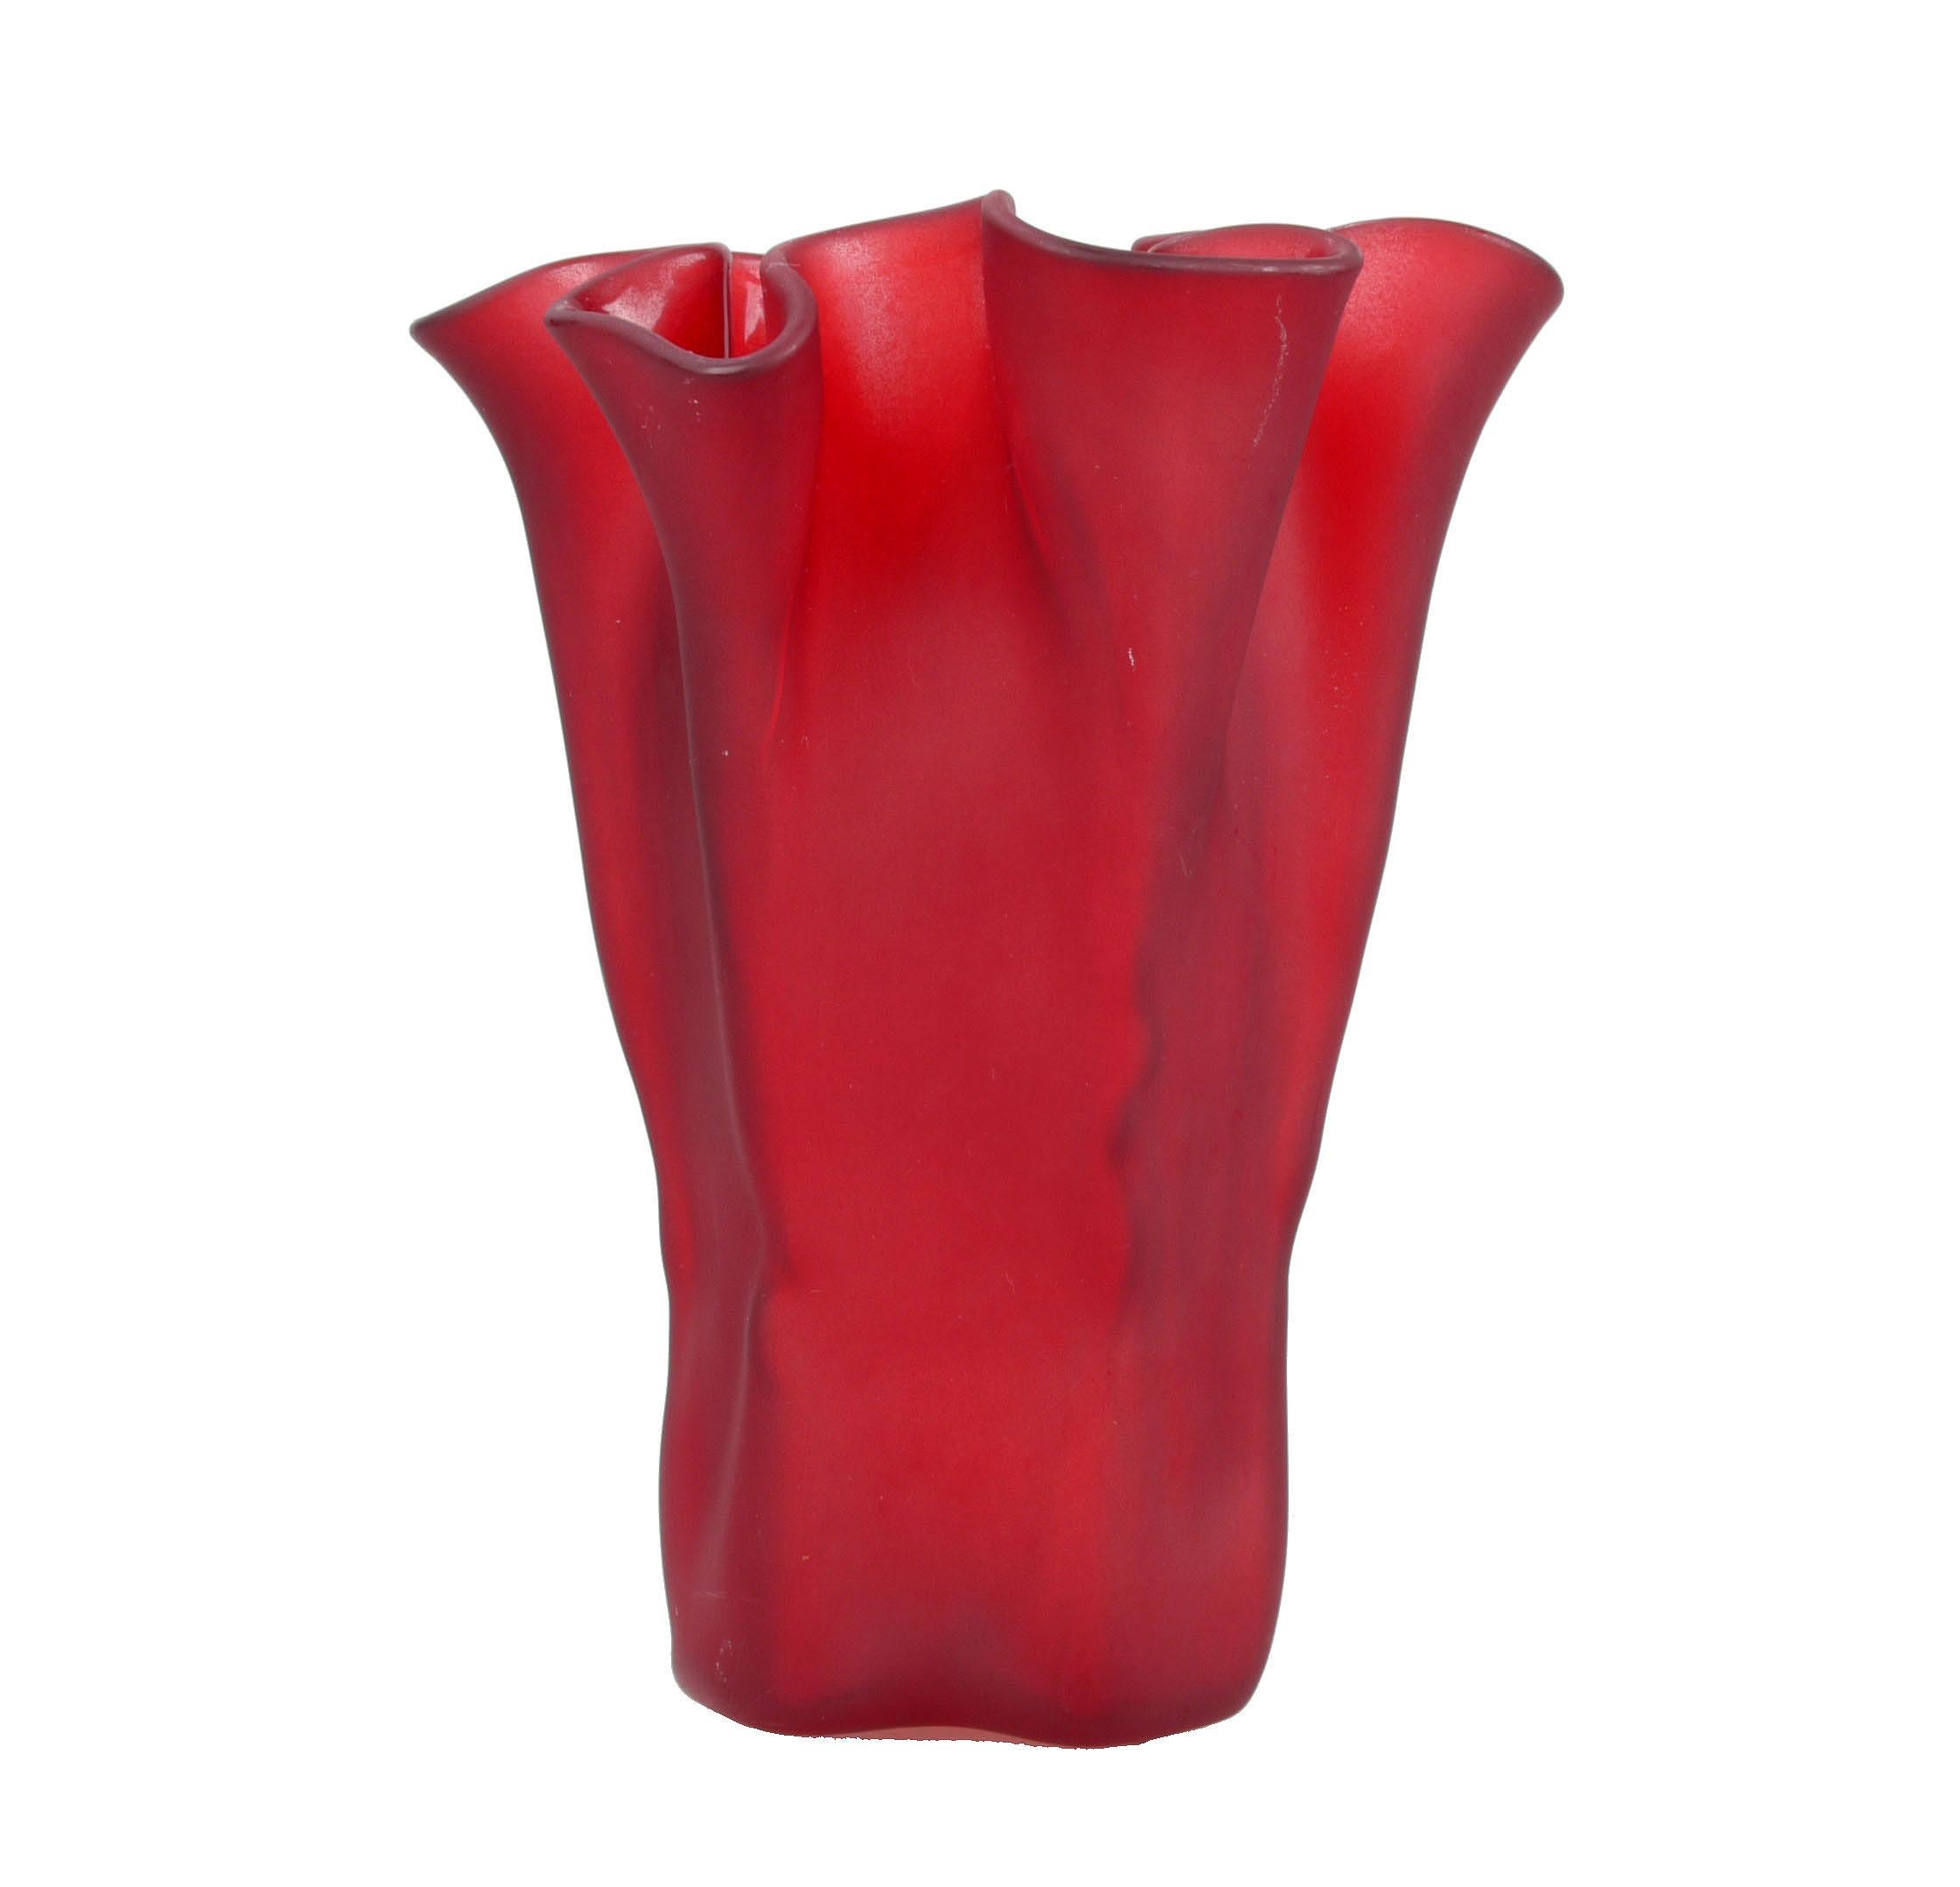 Magnifique vase en verre d'art rouge à volants soufflé et peint à la main de Muurla, fabriqué en Finlande, The Modern Scandinavian. 
Marque du fabricant sur le dessus du vase. Ce vase de style Fazzoletto apporte de la joie à toute réunion de